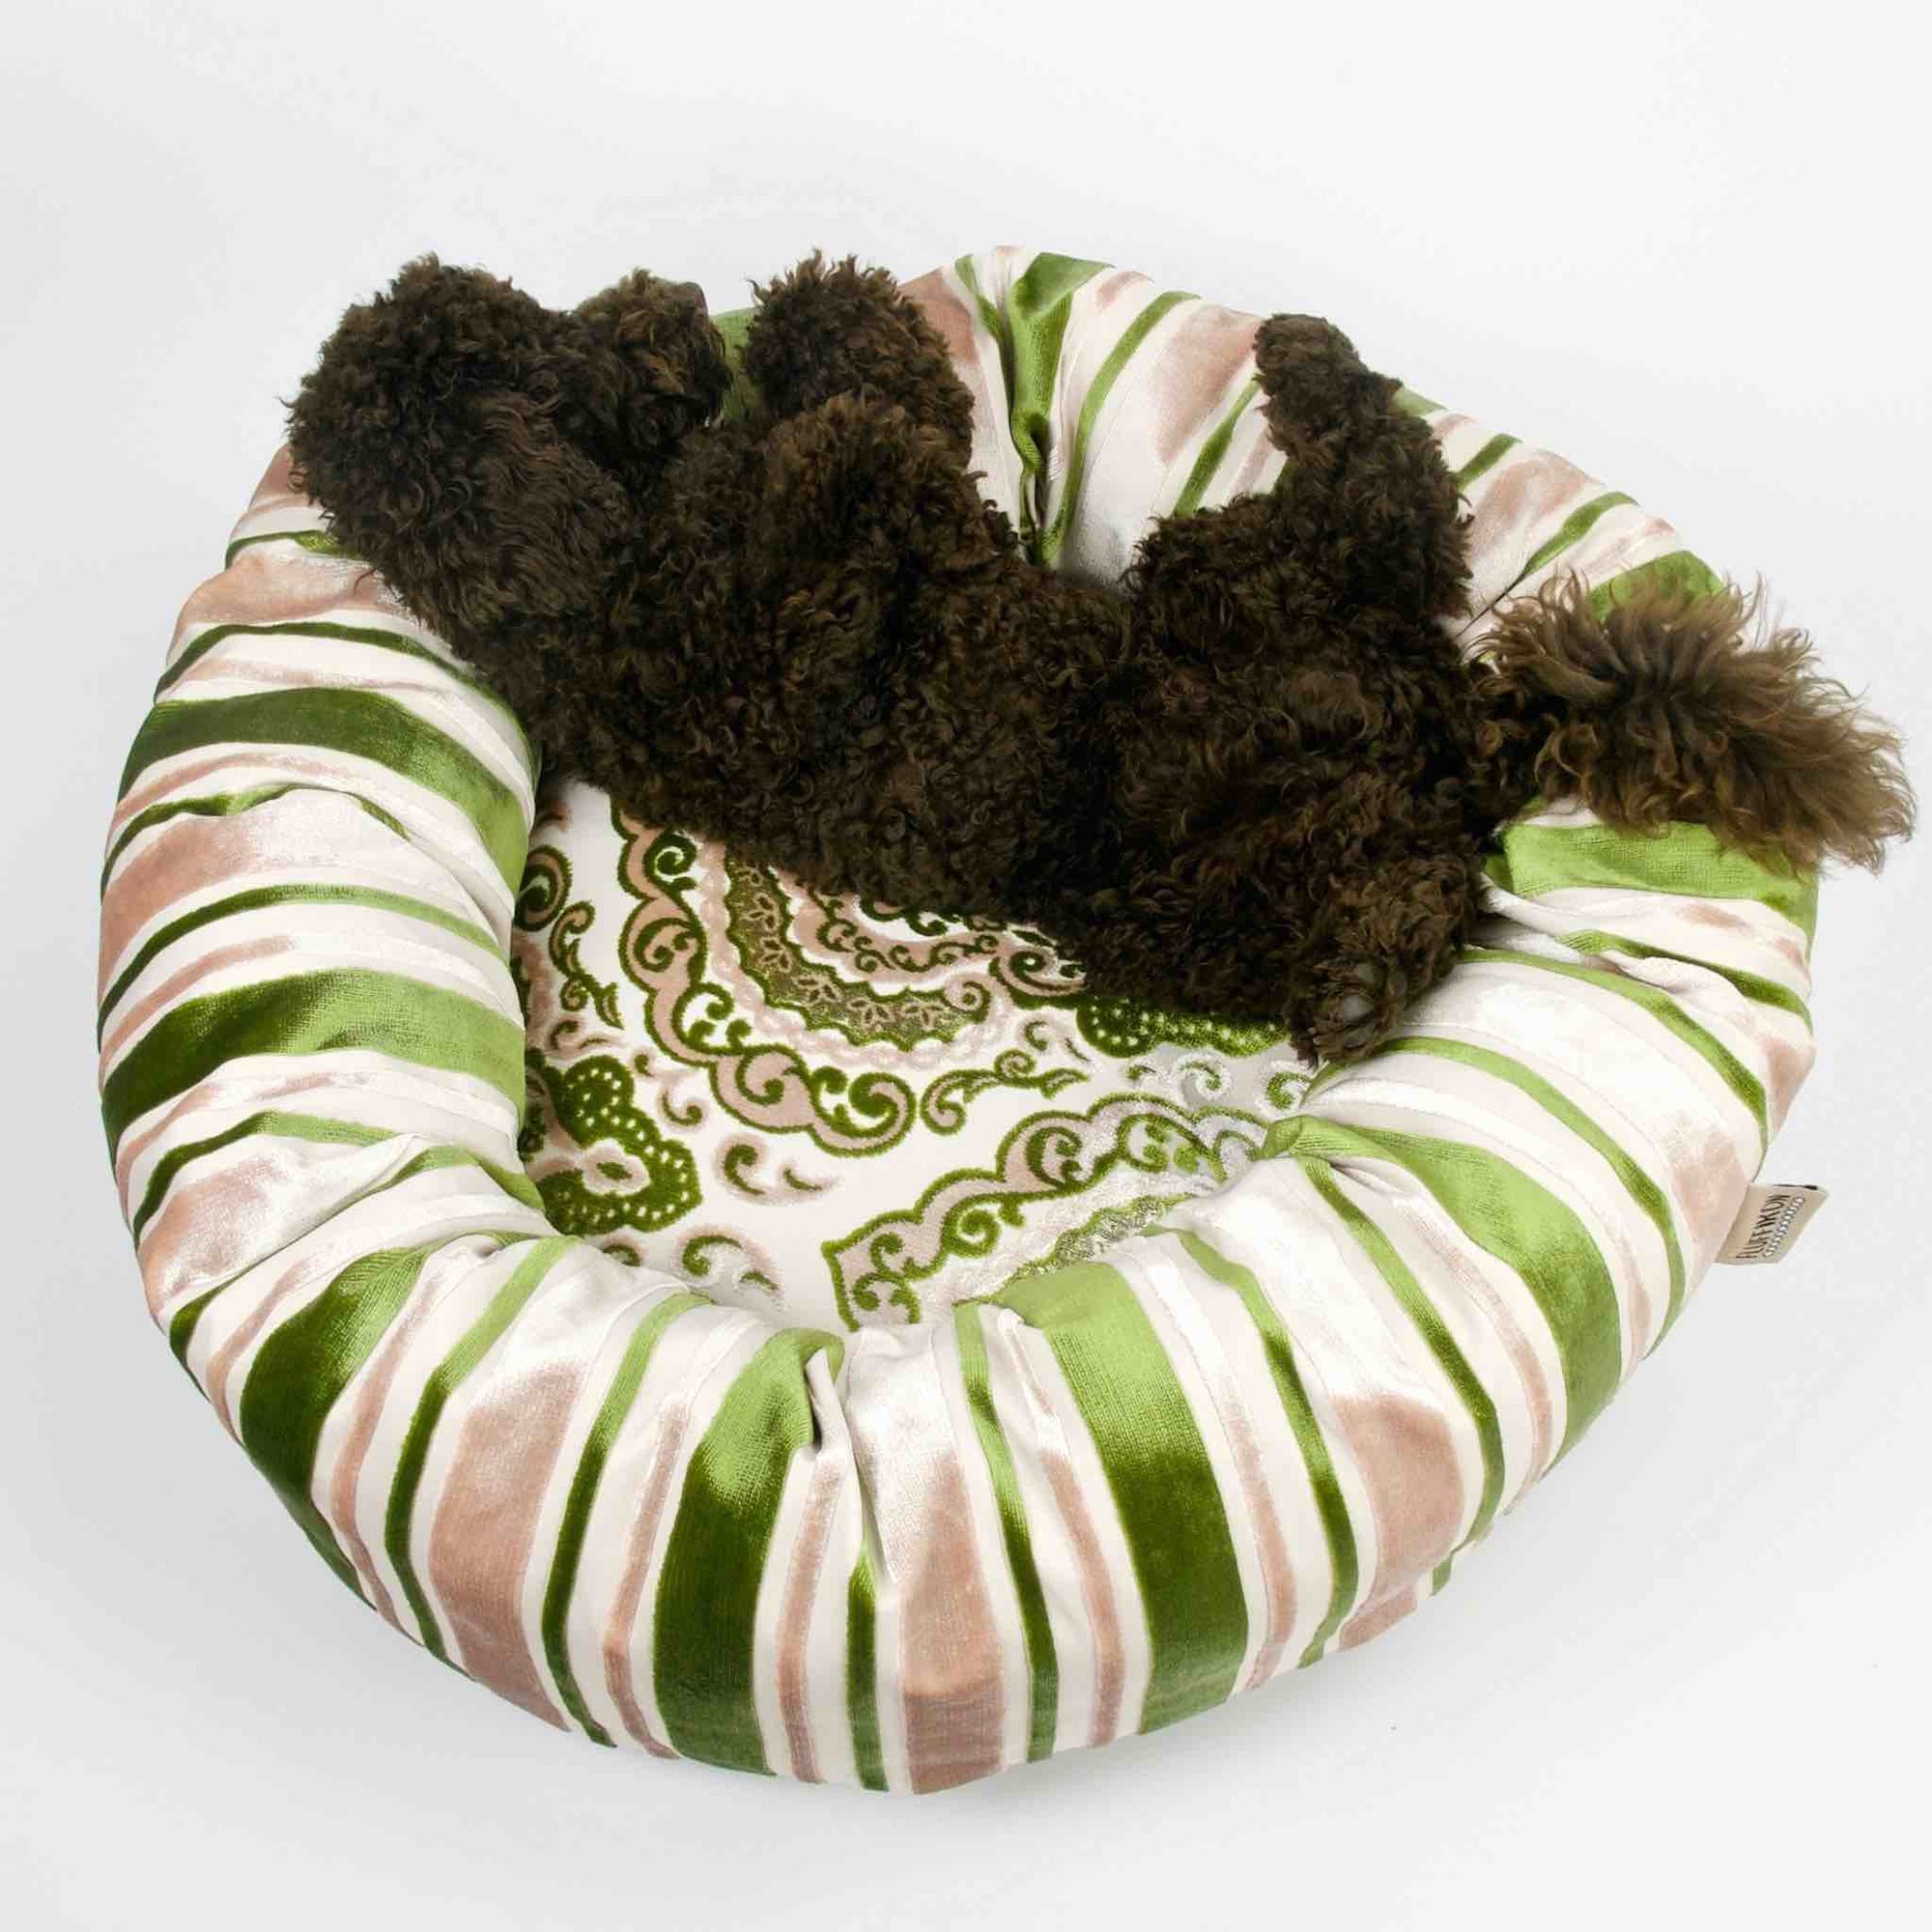 Hundebett Samt grün. Ein brauner Hund schläft im runden Fluffikon Hundebett.